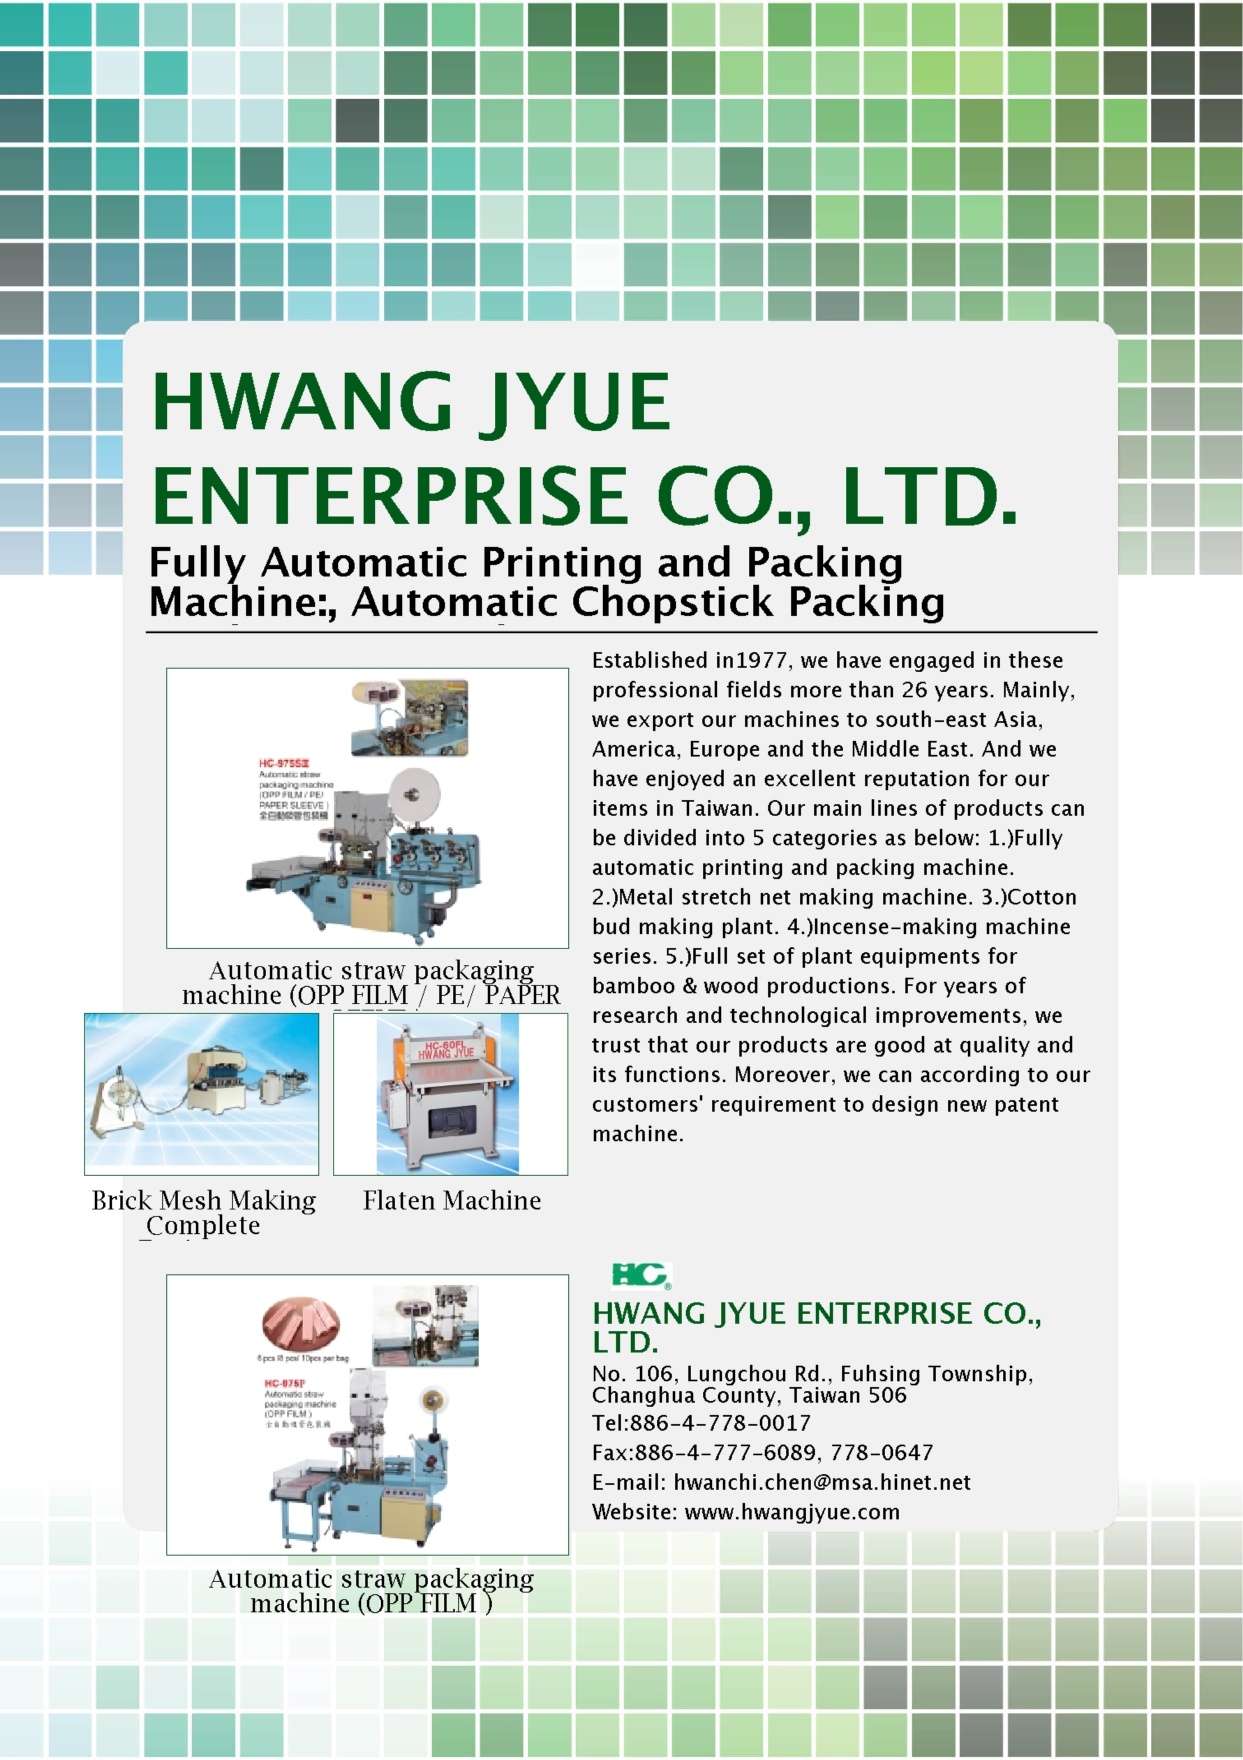 HWANG JYUE ENTERPRISE CO., LTD.